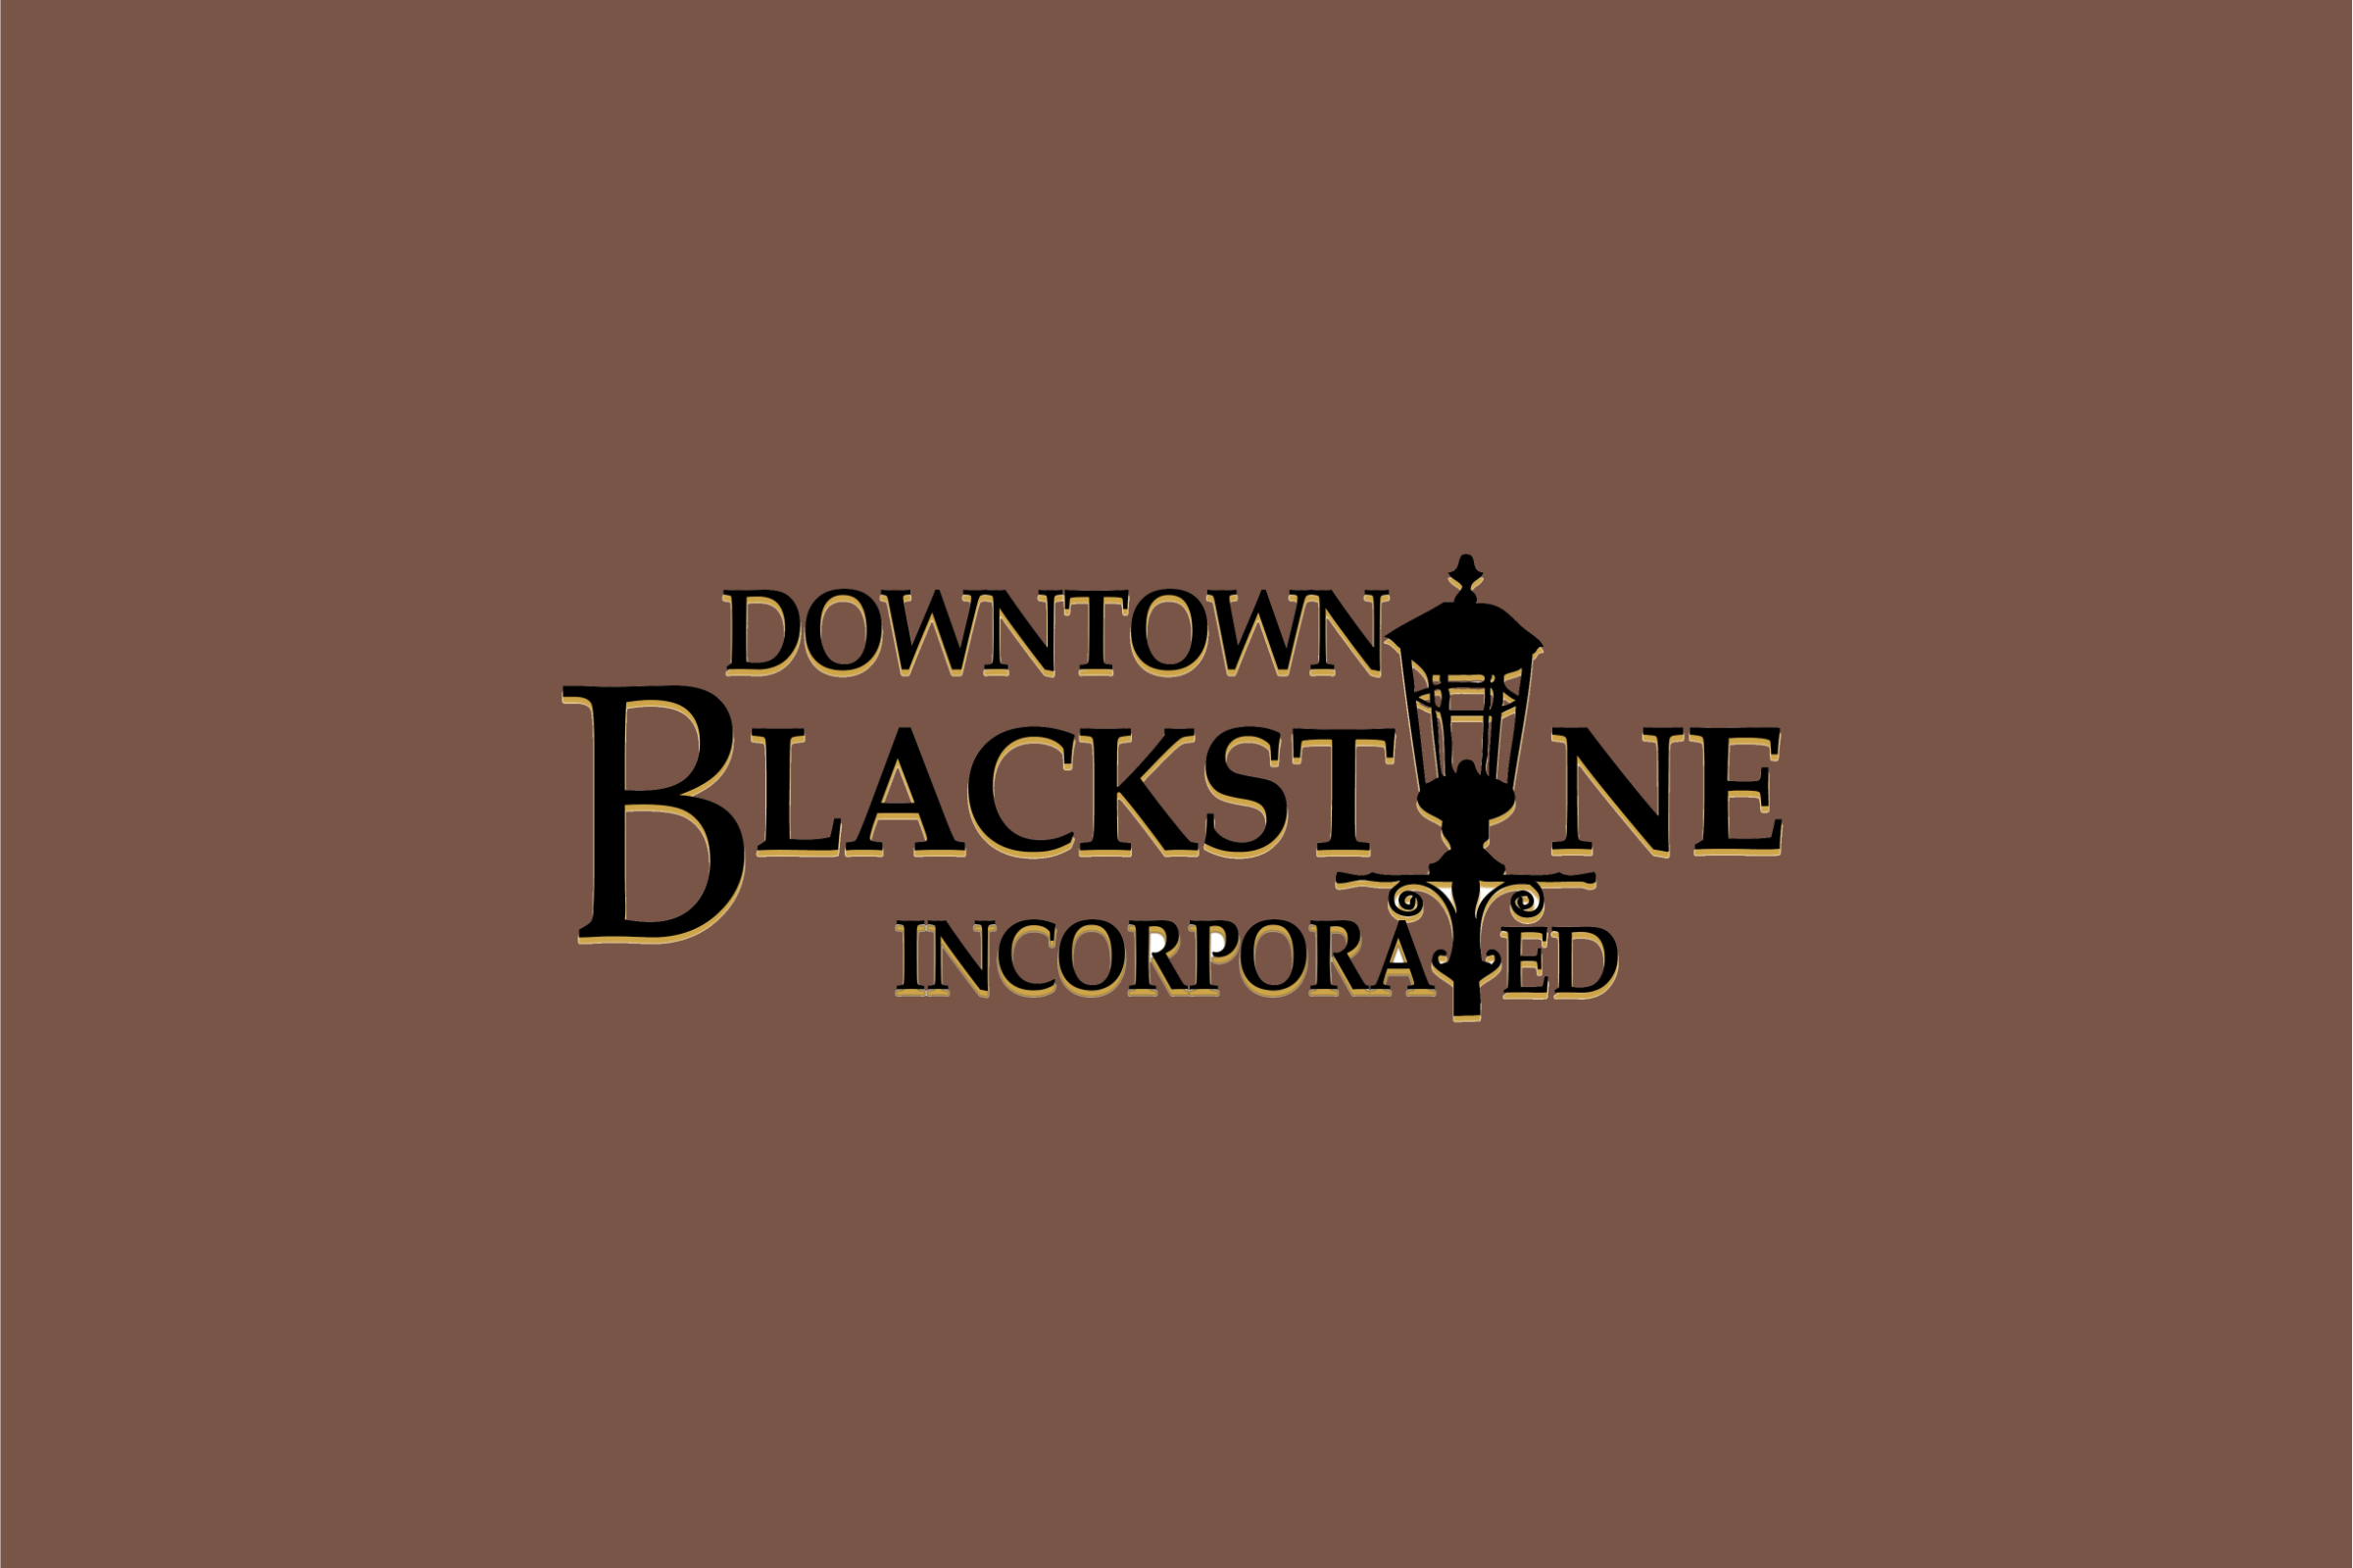 Downtown Blackstone